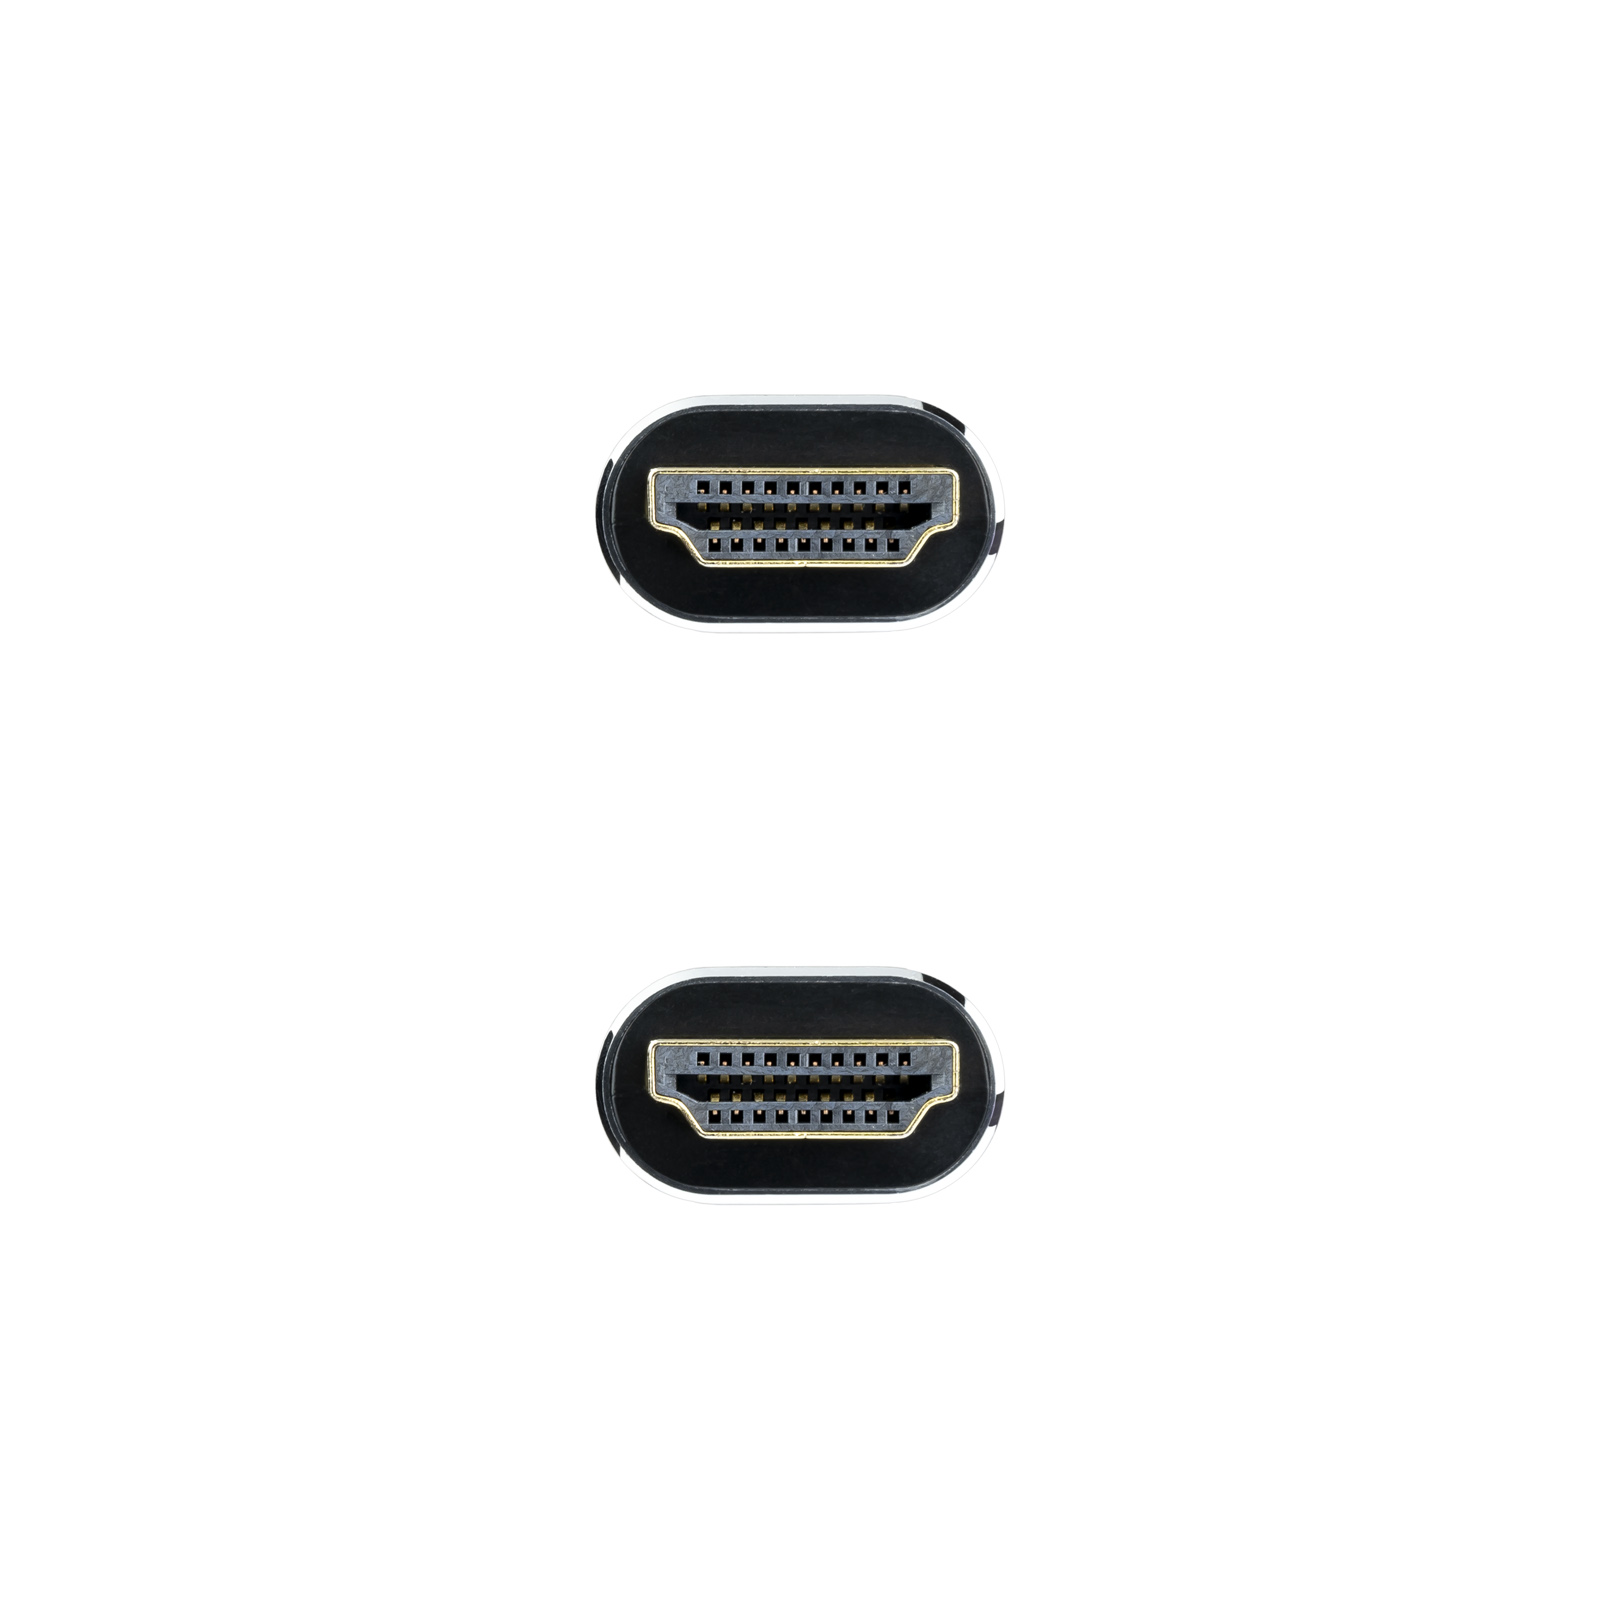 Câble Nanocable HDMI 2.1 Iris 8K A/MA/M - 5 m - Noir